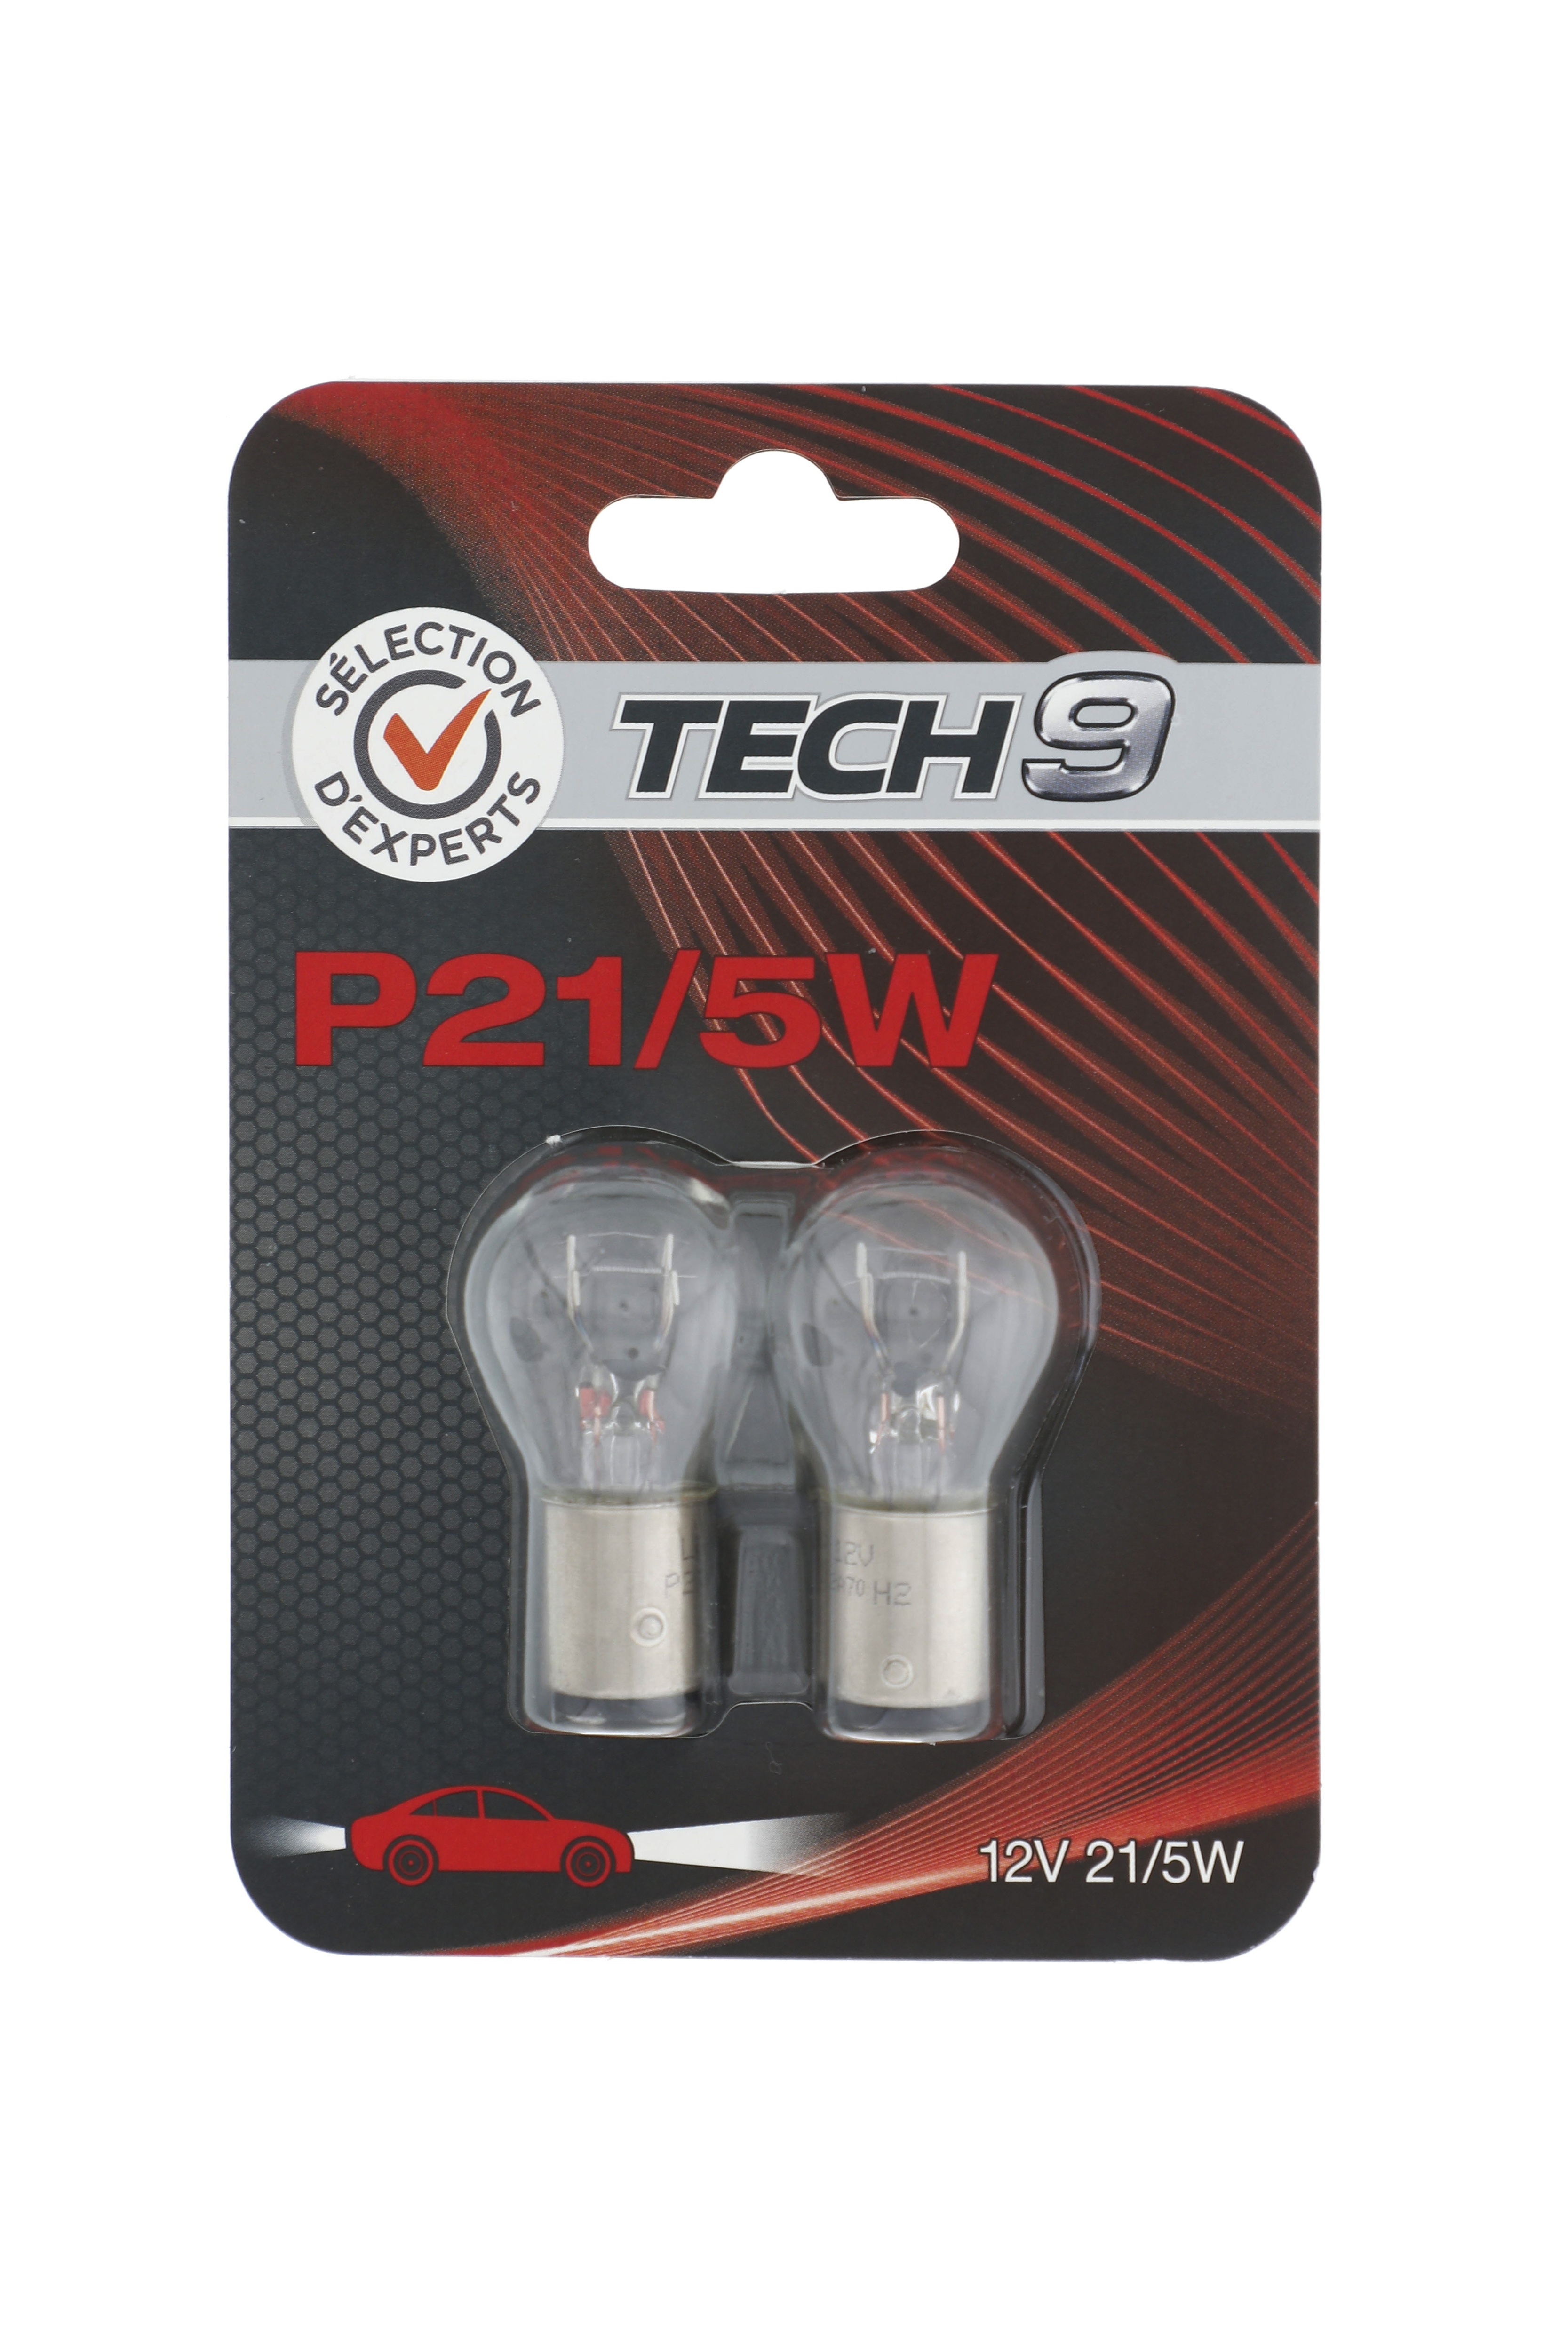 2 ampoules P21/5W - Sélection d'Experts - Tech9 au meilleur prix